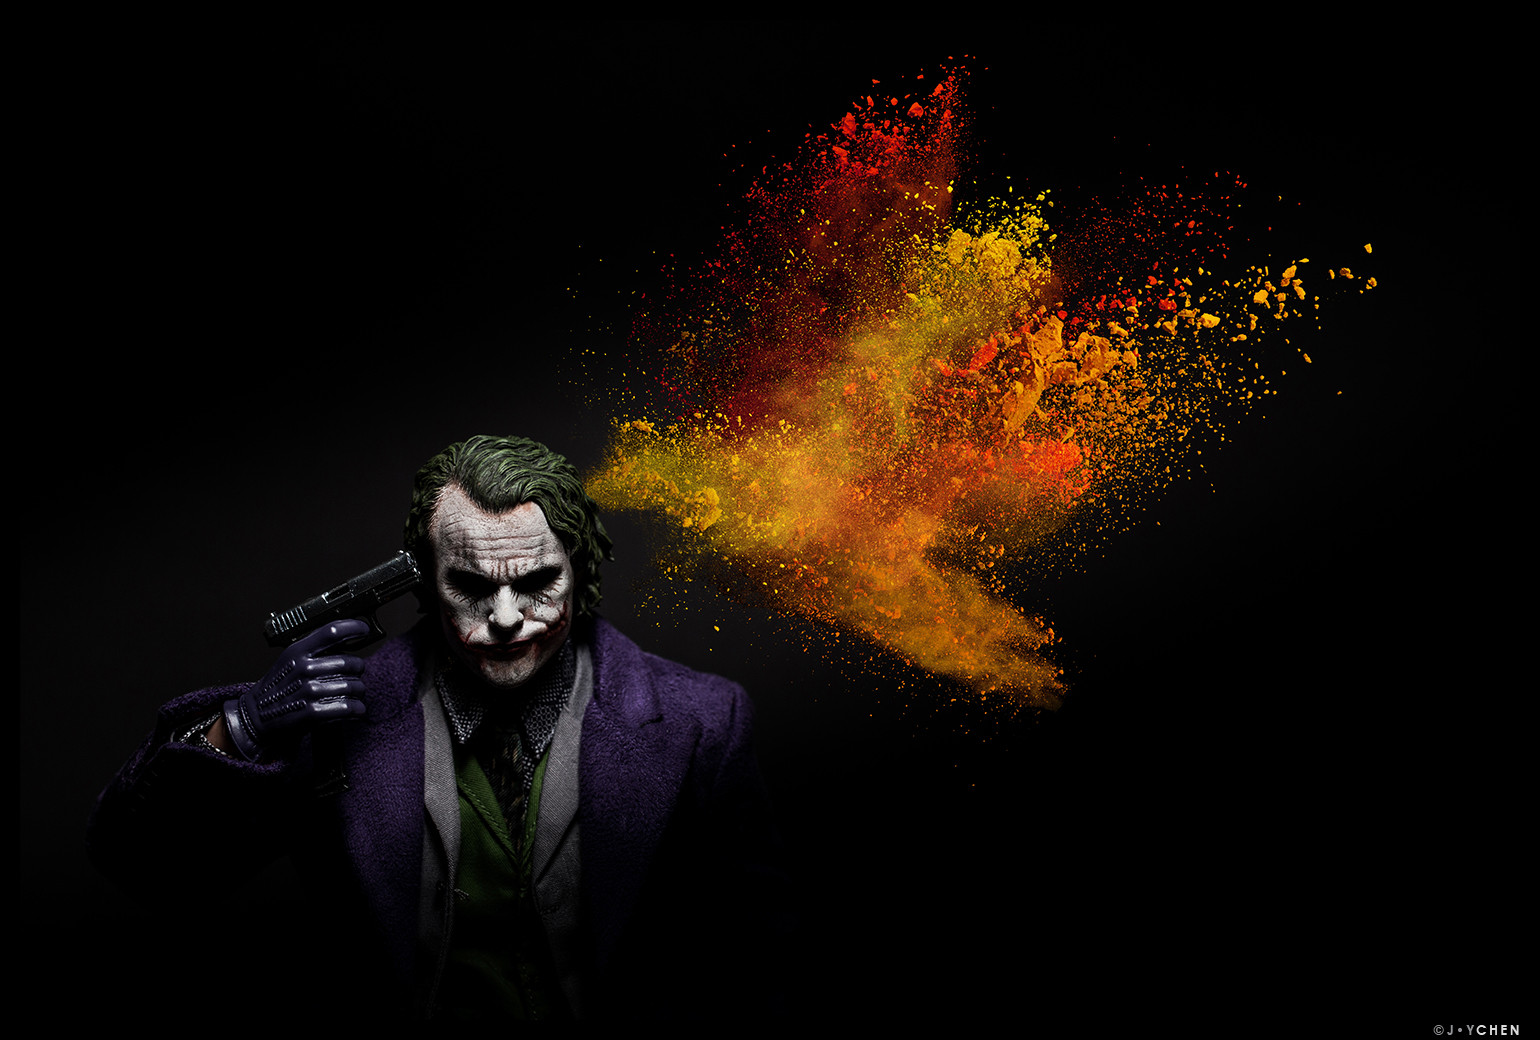 Dark Joker Wallpapers